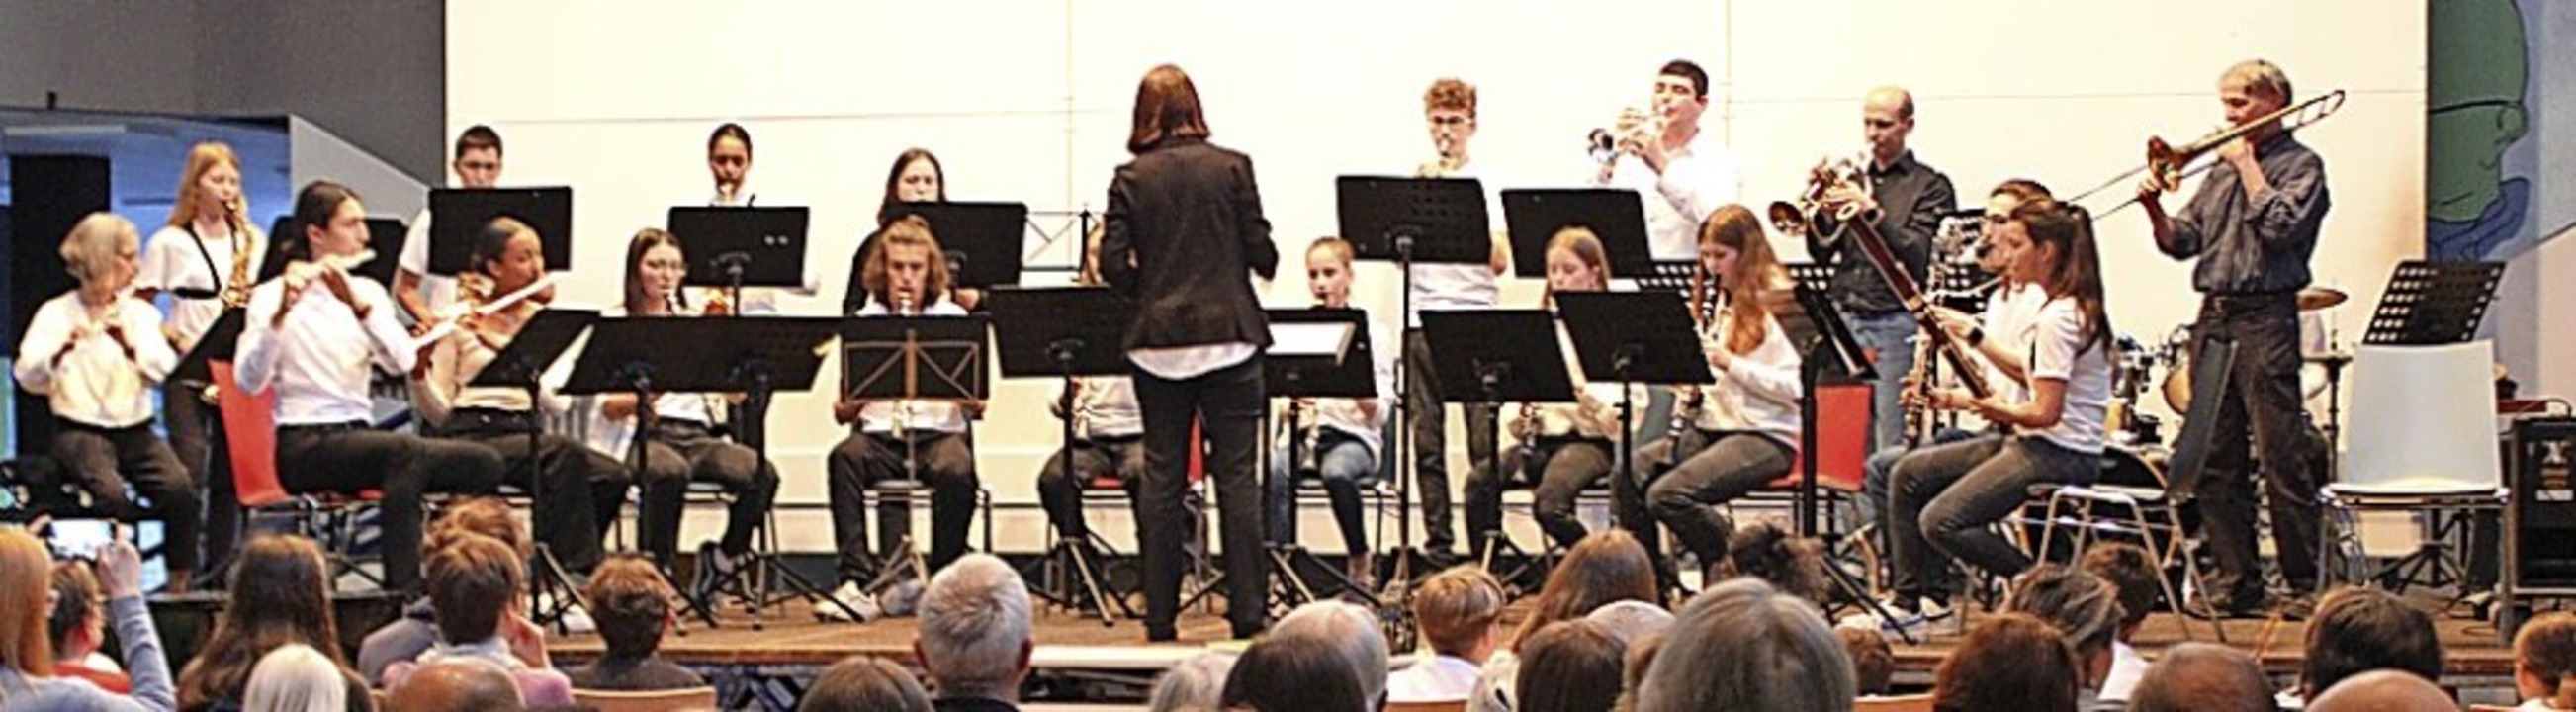 Das Jugendorchester Forte Panini der Musikschule.  | Foto: Enya Steinbrecher